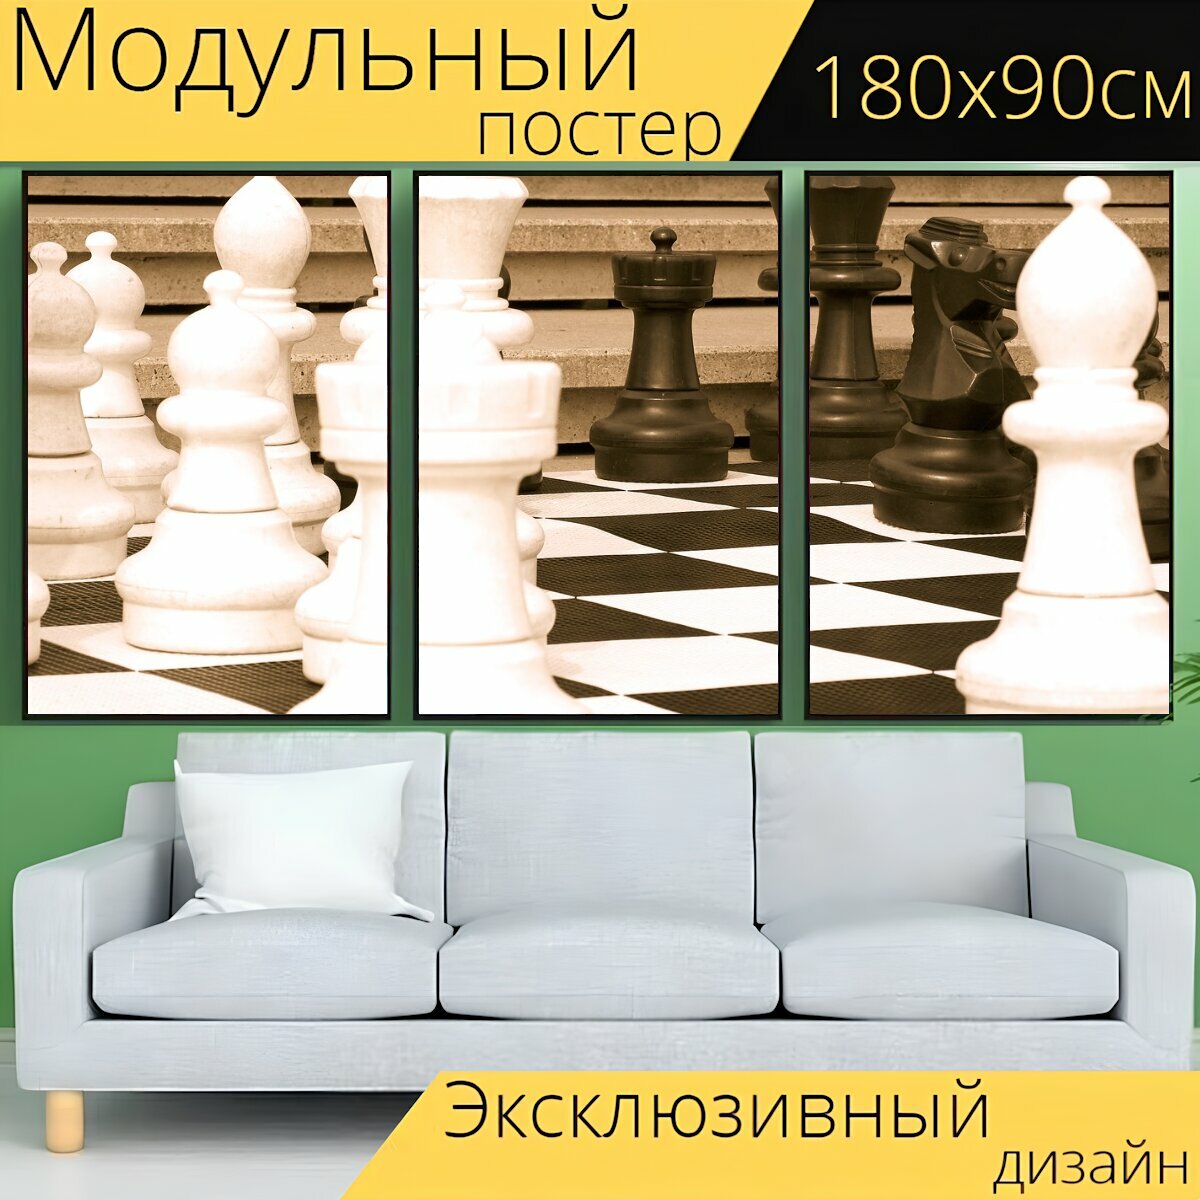 Модульный постер "Шахматы, игра, интеллект" 180 x 90 см. для интерьера